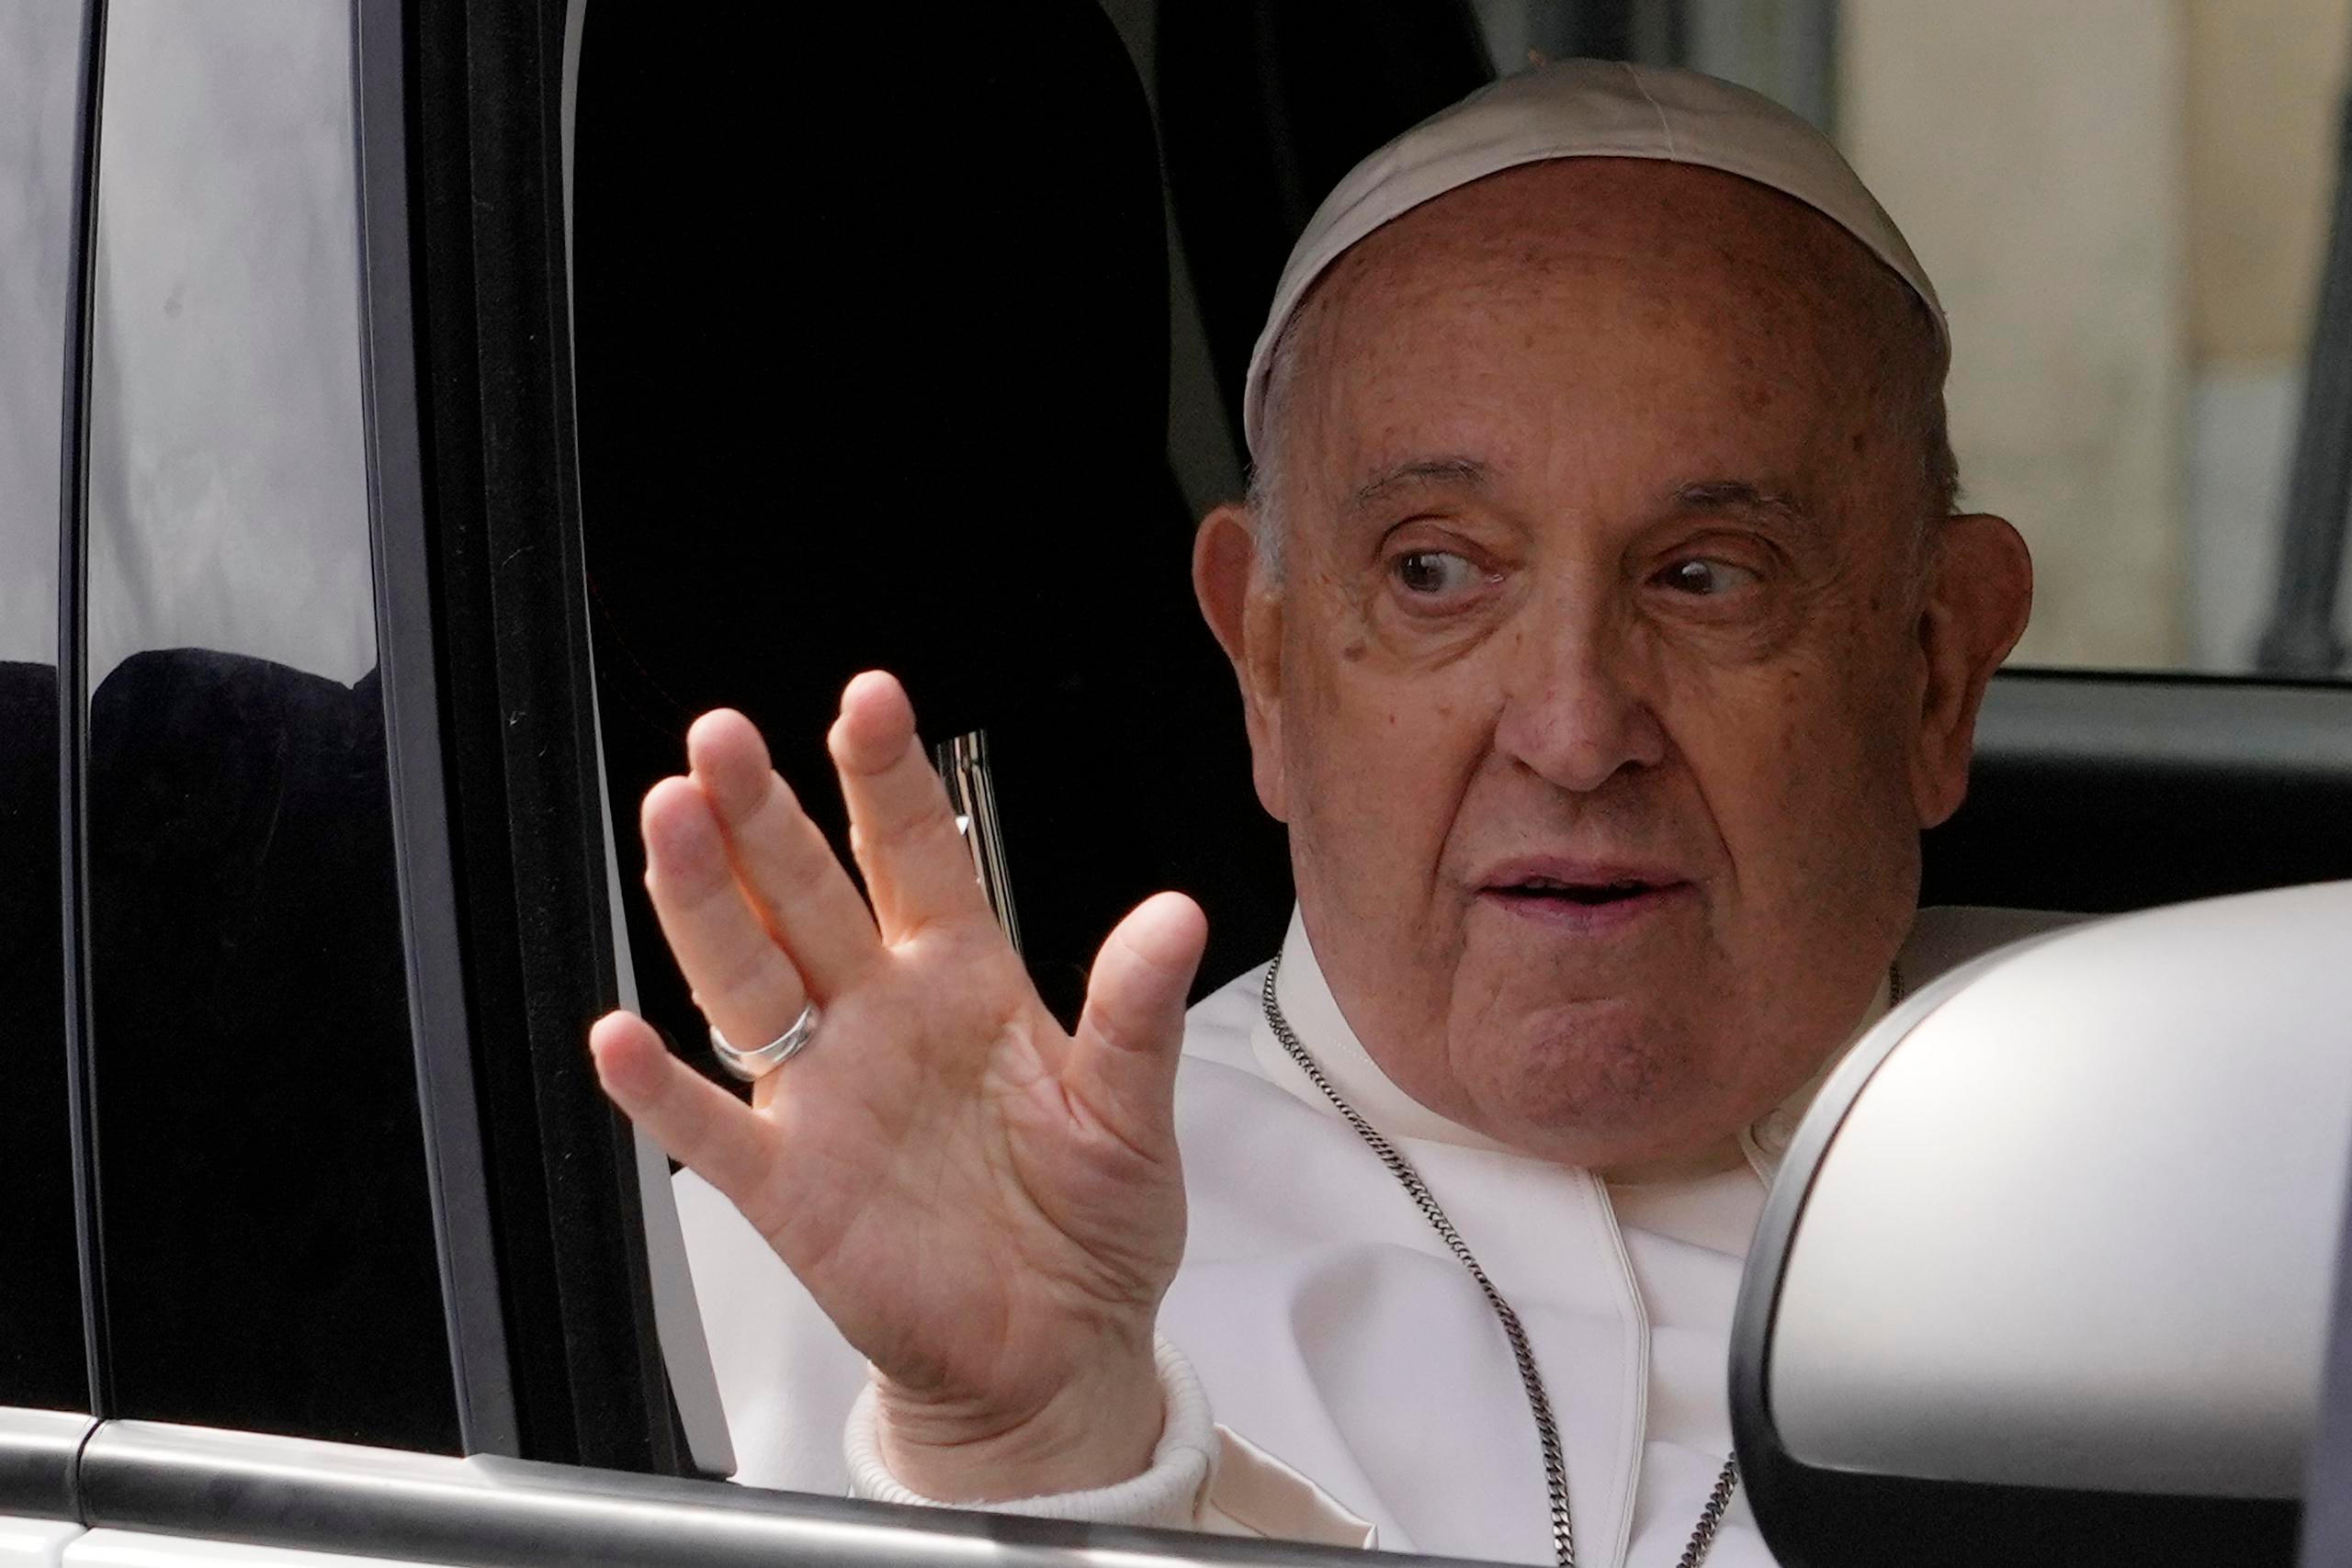 El papa Francisco saluda mientras llega al Vaticano luego de haber estado ingresado en un hospital.